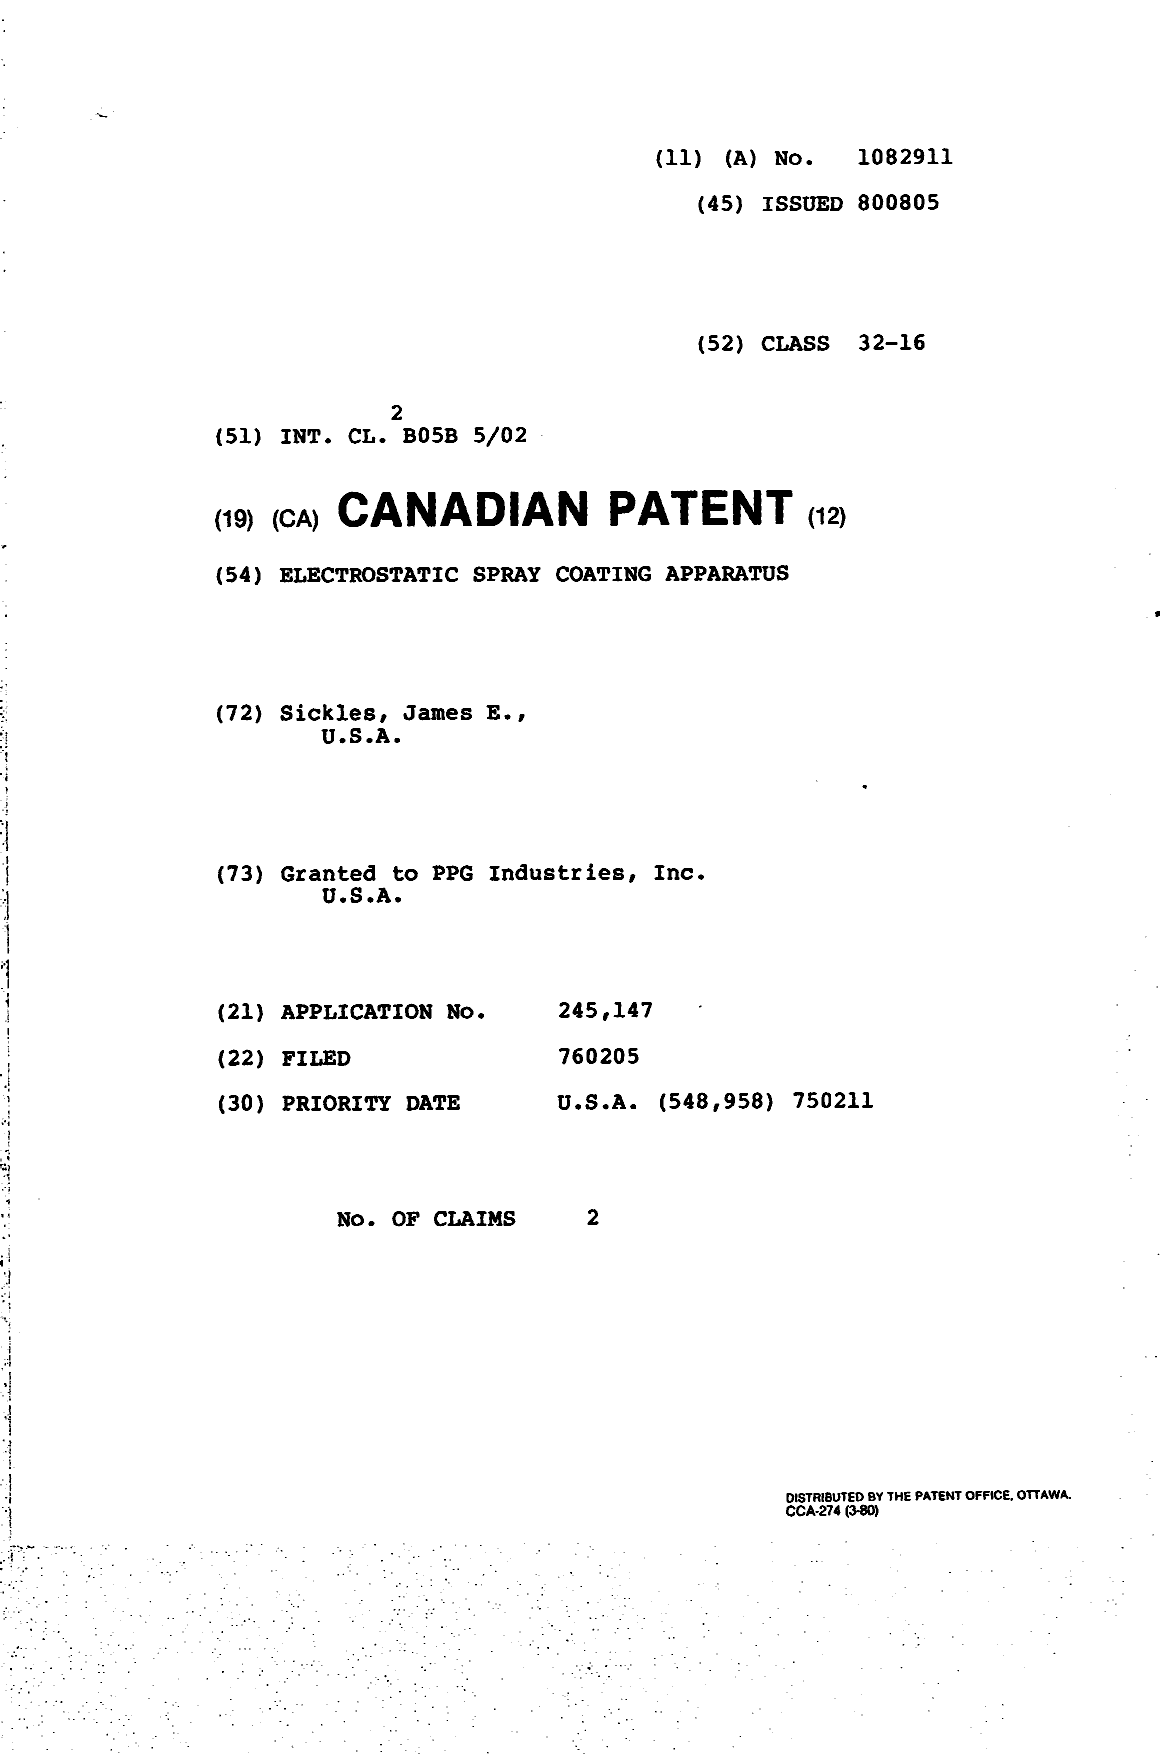 Document de brevet canadien 1082911. Page couverture 19940408. Image 1 de 1